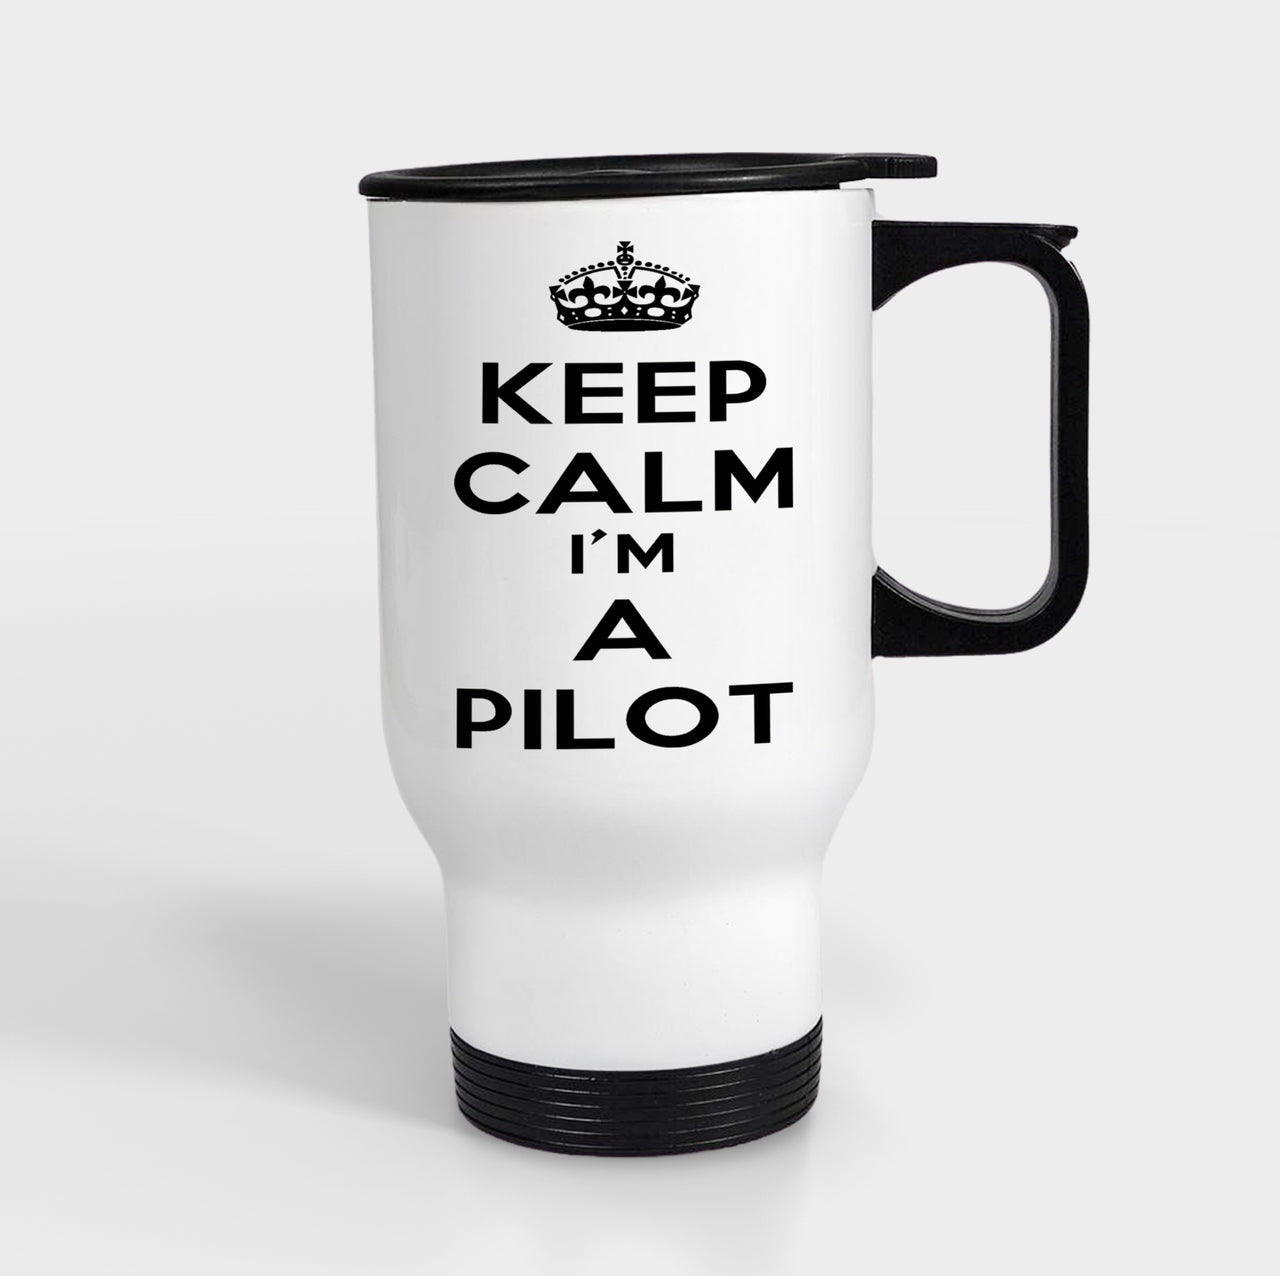 Keep Calm I'm a Pilot Designed Travel Mugs (With Holder)